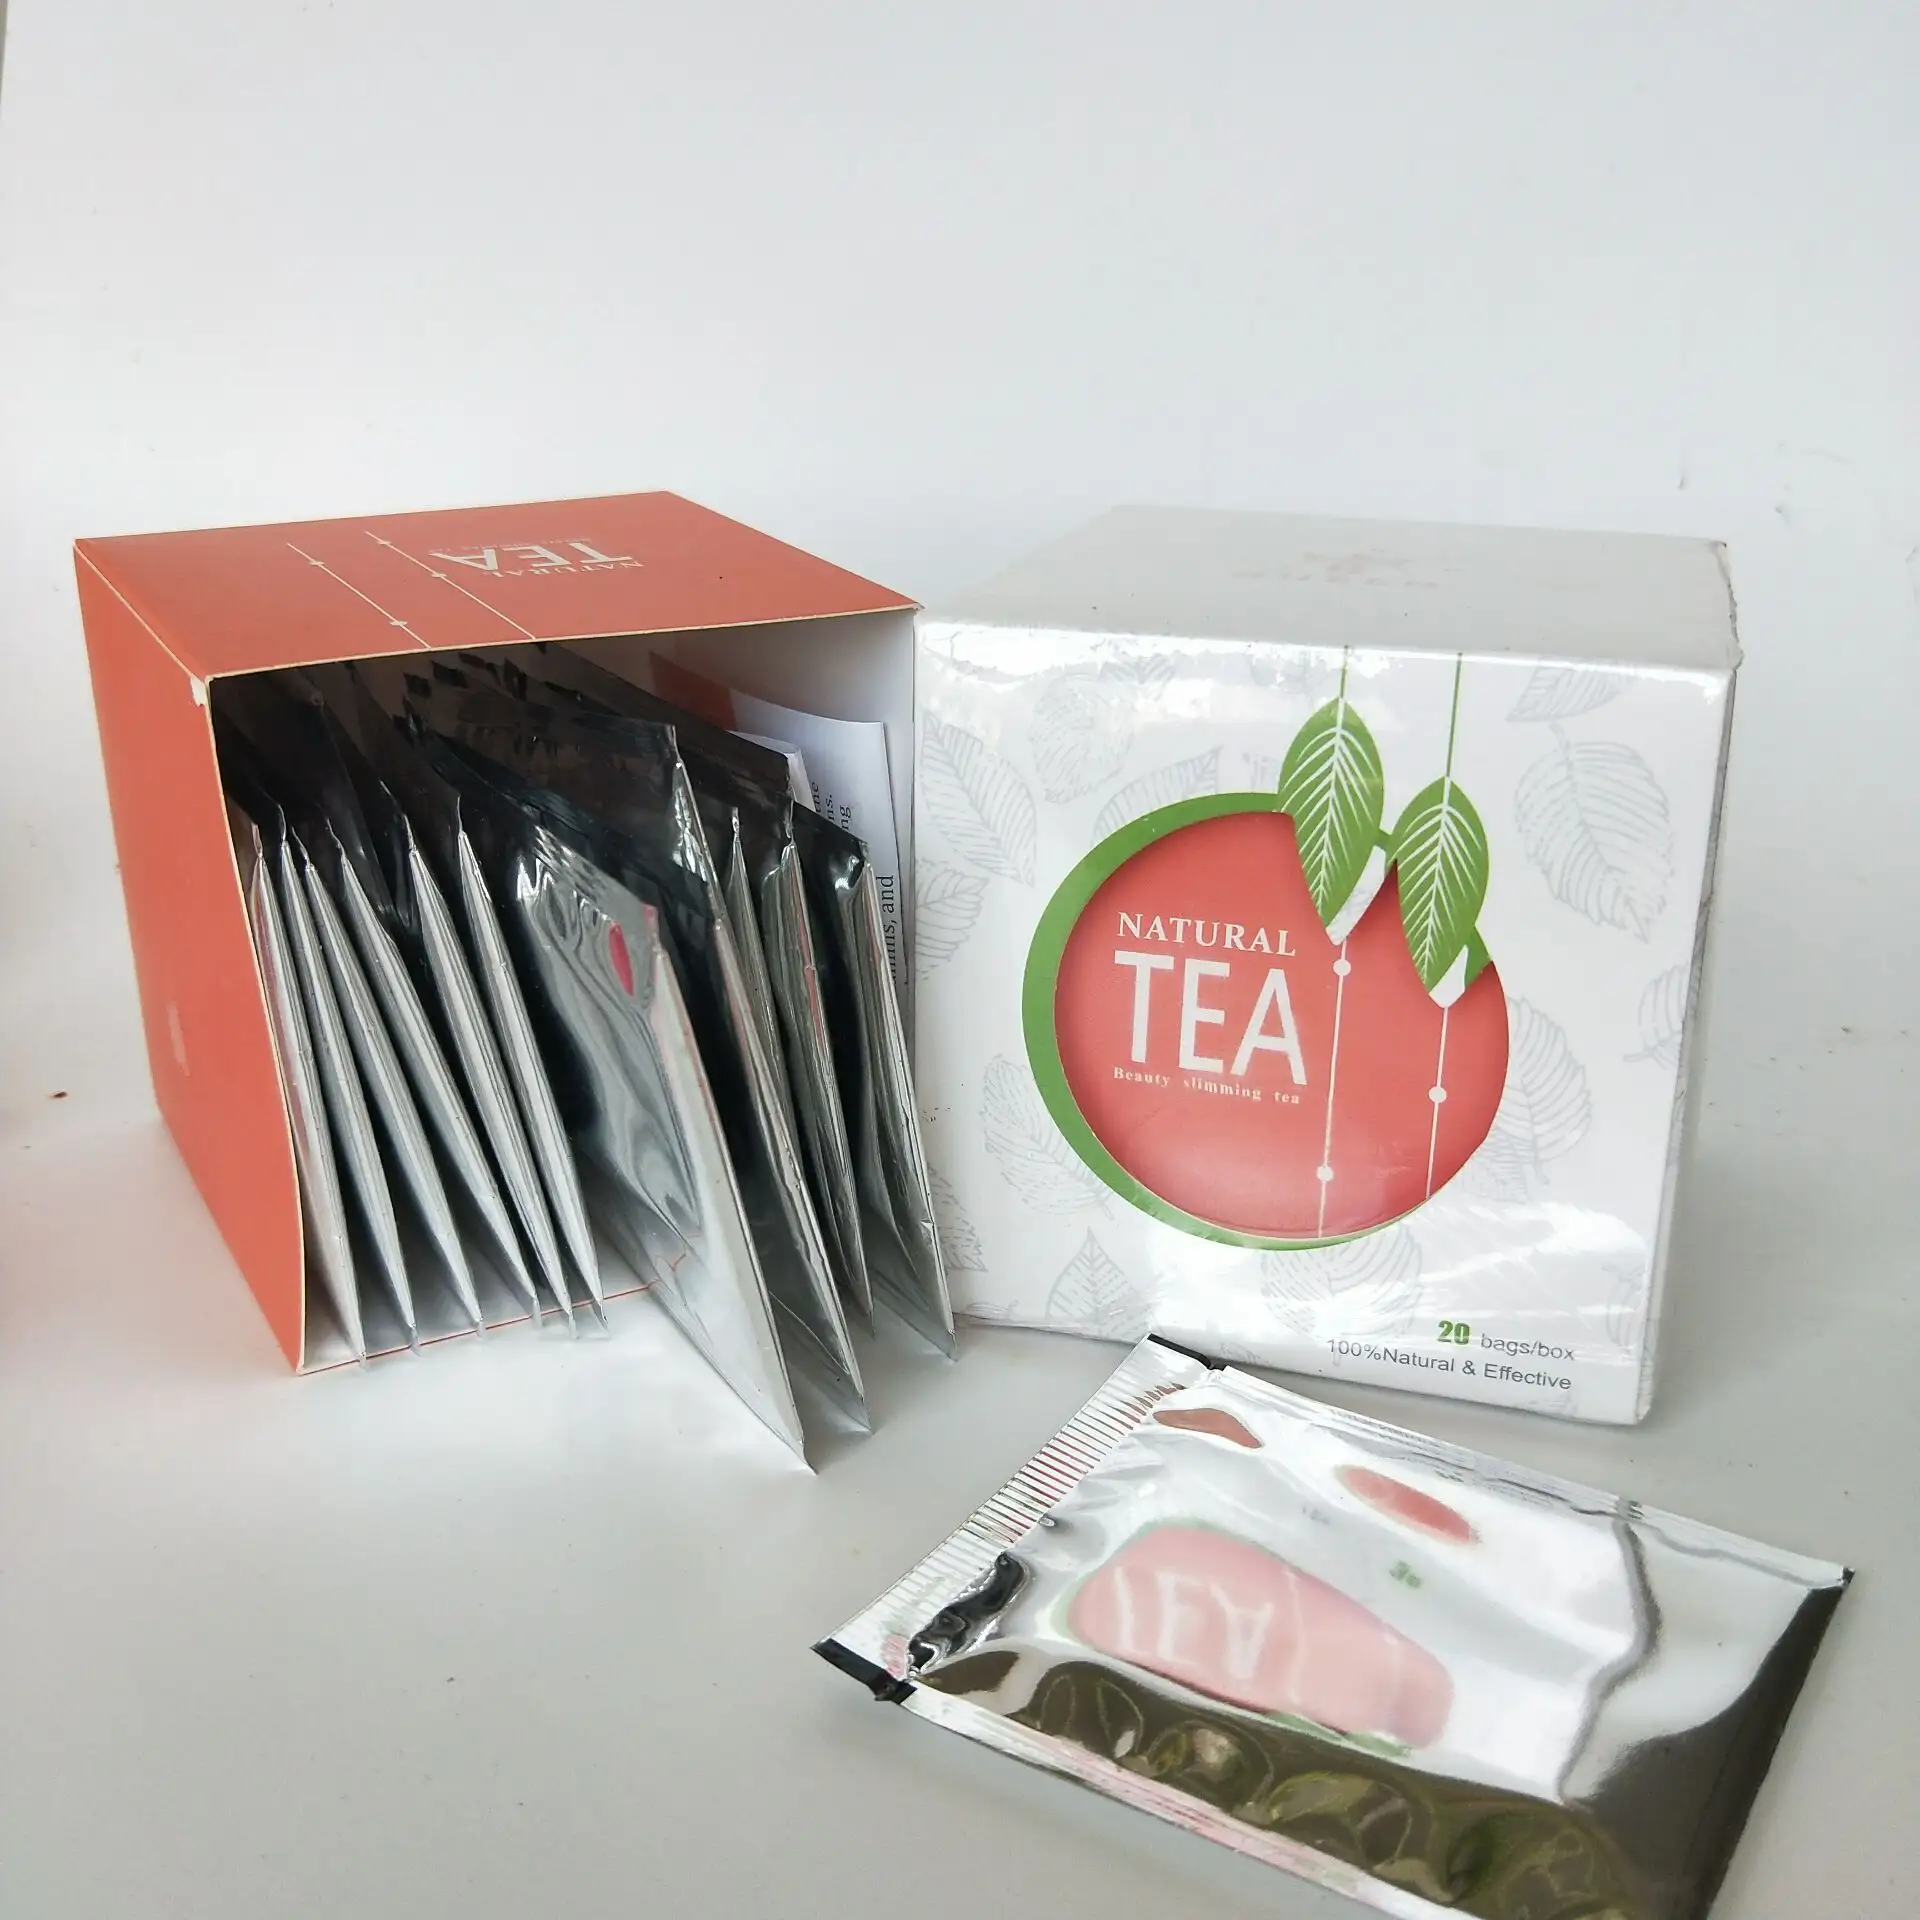 אין צד-יעיל אורגני סנה עלה יופי לחתוך slim תה